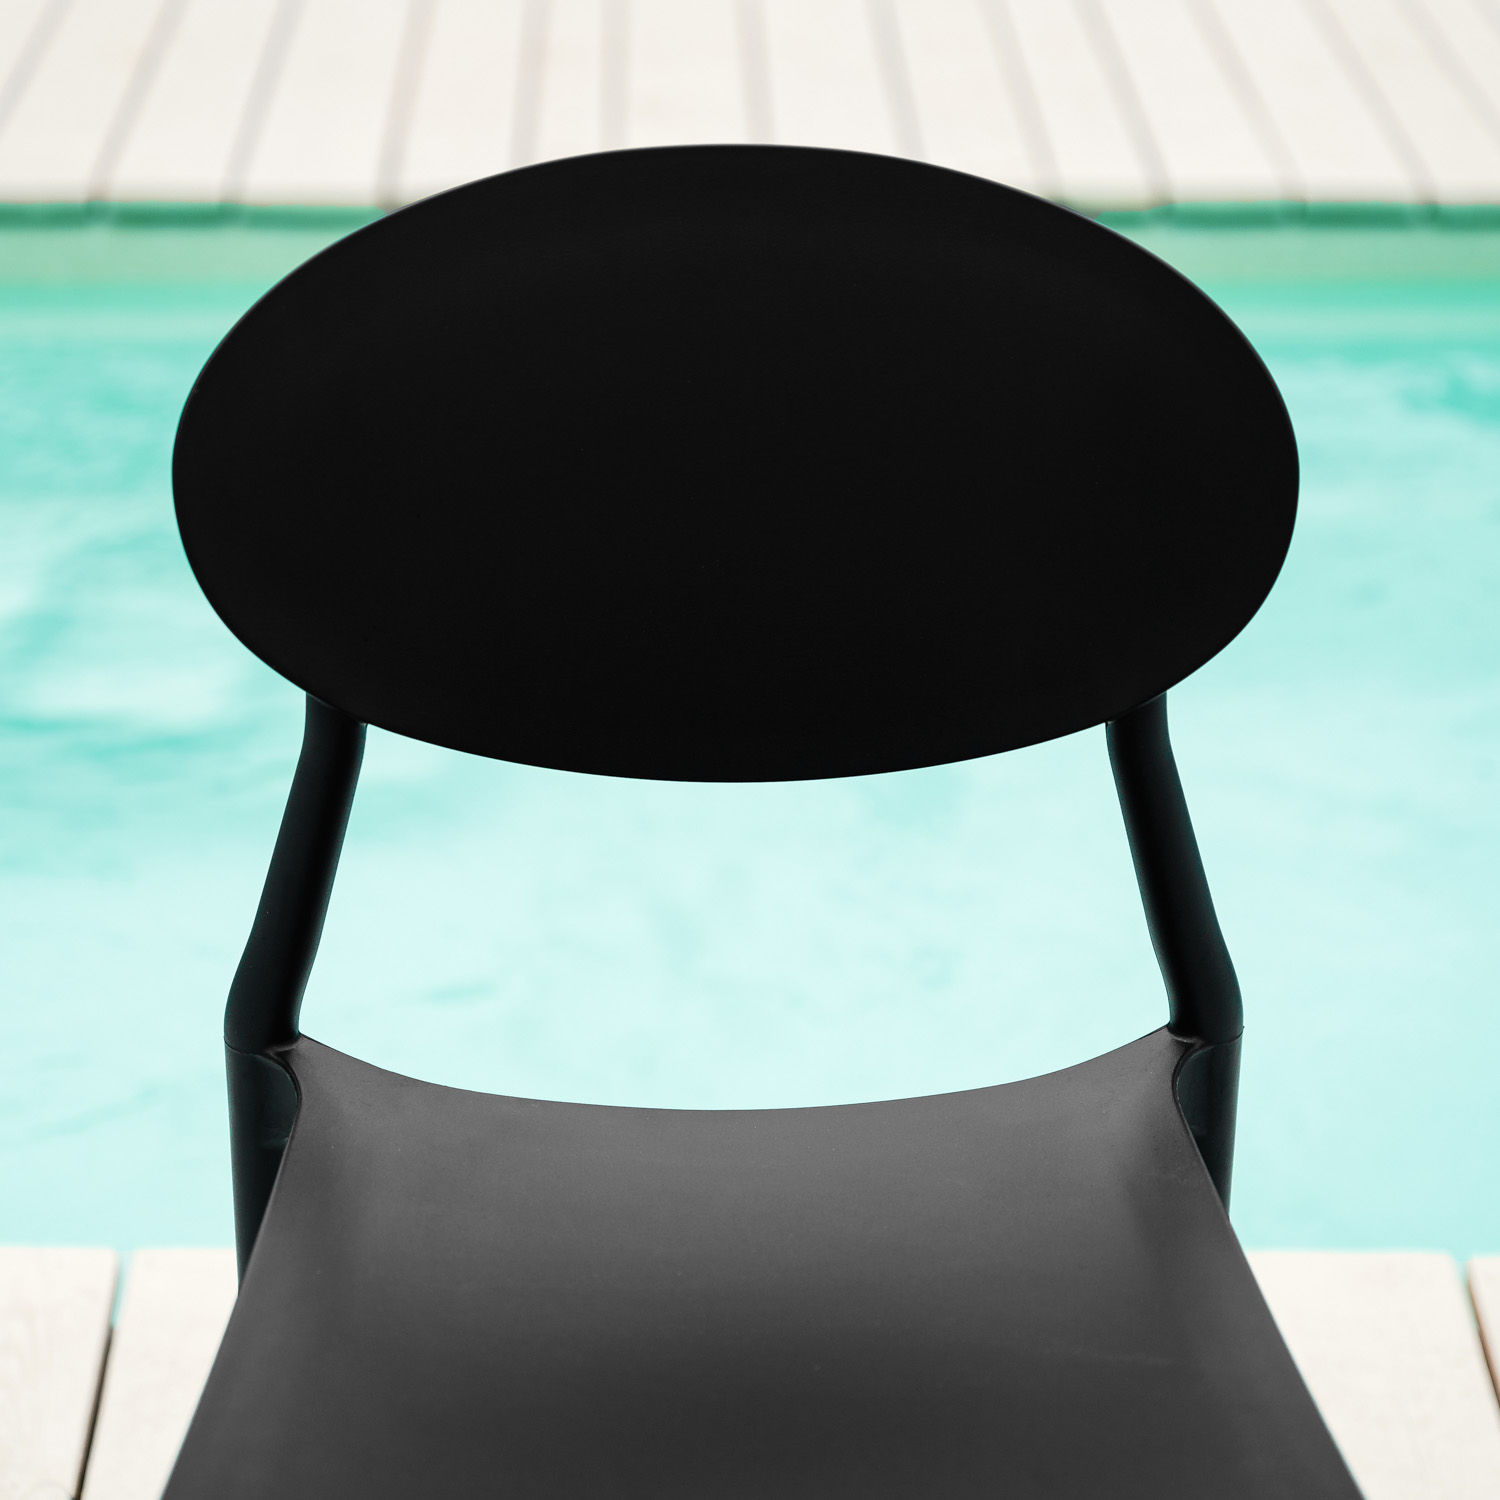 Chaise de jardin Lot de 4 Noir Chaises design moderne Plastique Chaises exterieur Chaises empilable Chaise de cuisine